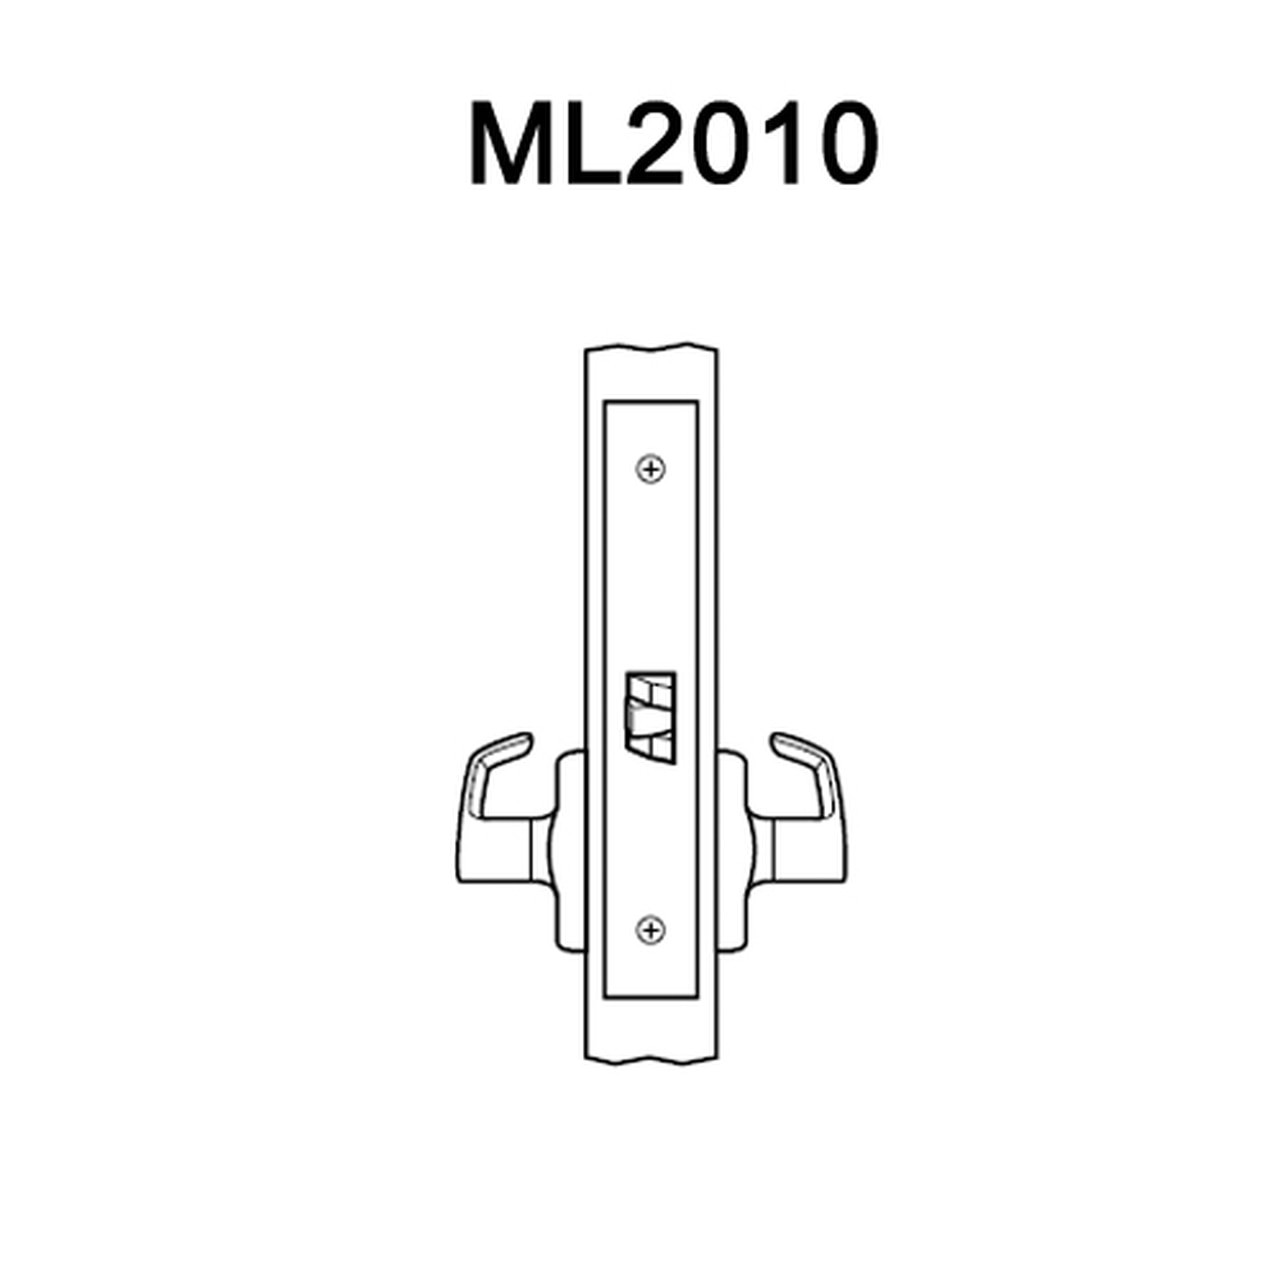 ML2010-RWA-605-M31 Corbin Russwin ML2000 Series Mortise PassageTrim Pack with Regis Lever in Bright Brass